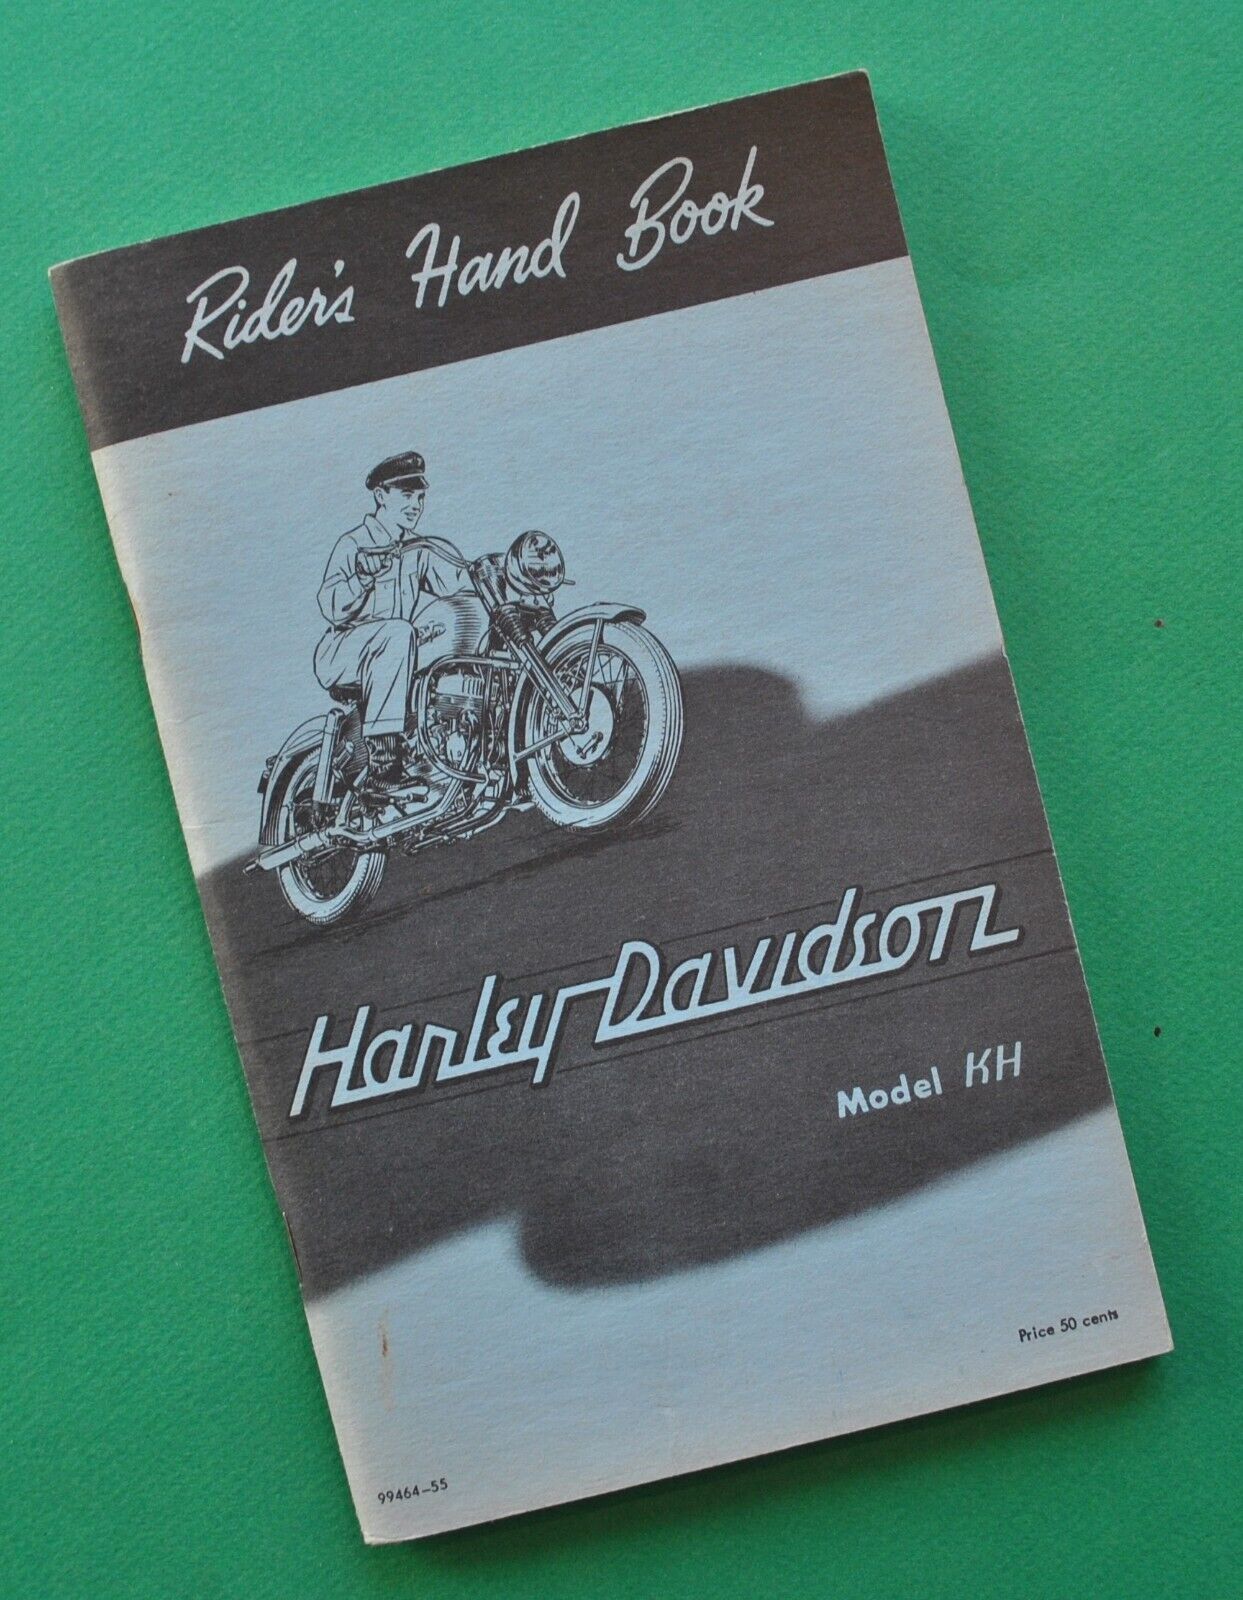 Original 1954-1956 Harley Davidson Riders Hand Book KH Model Owners Manual Book